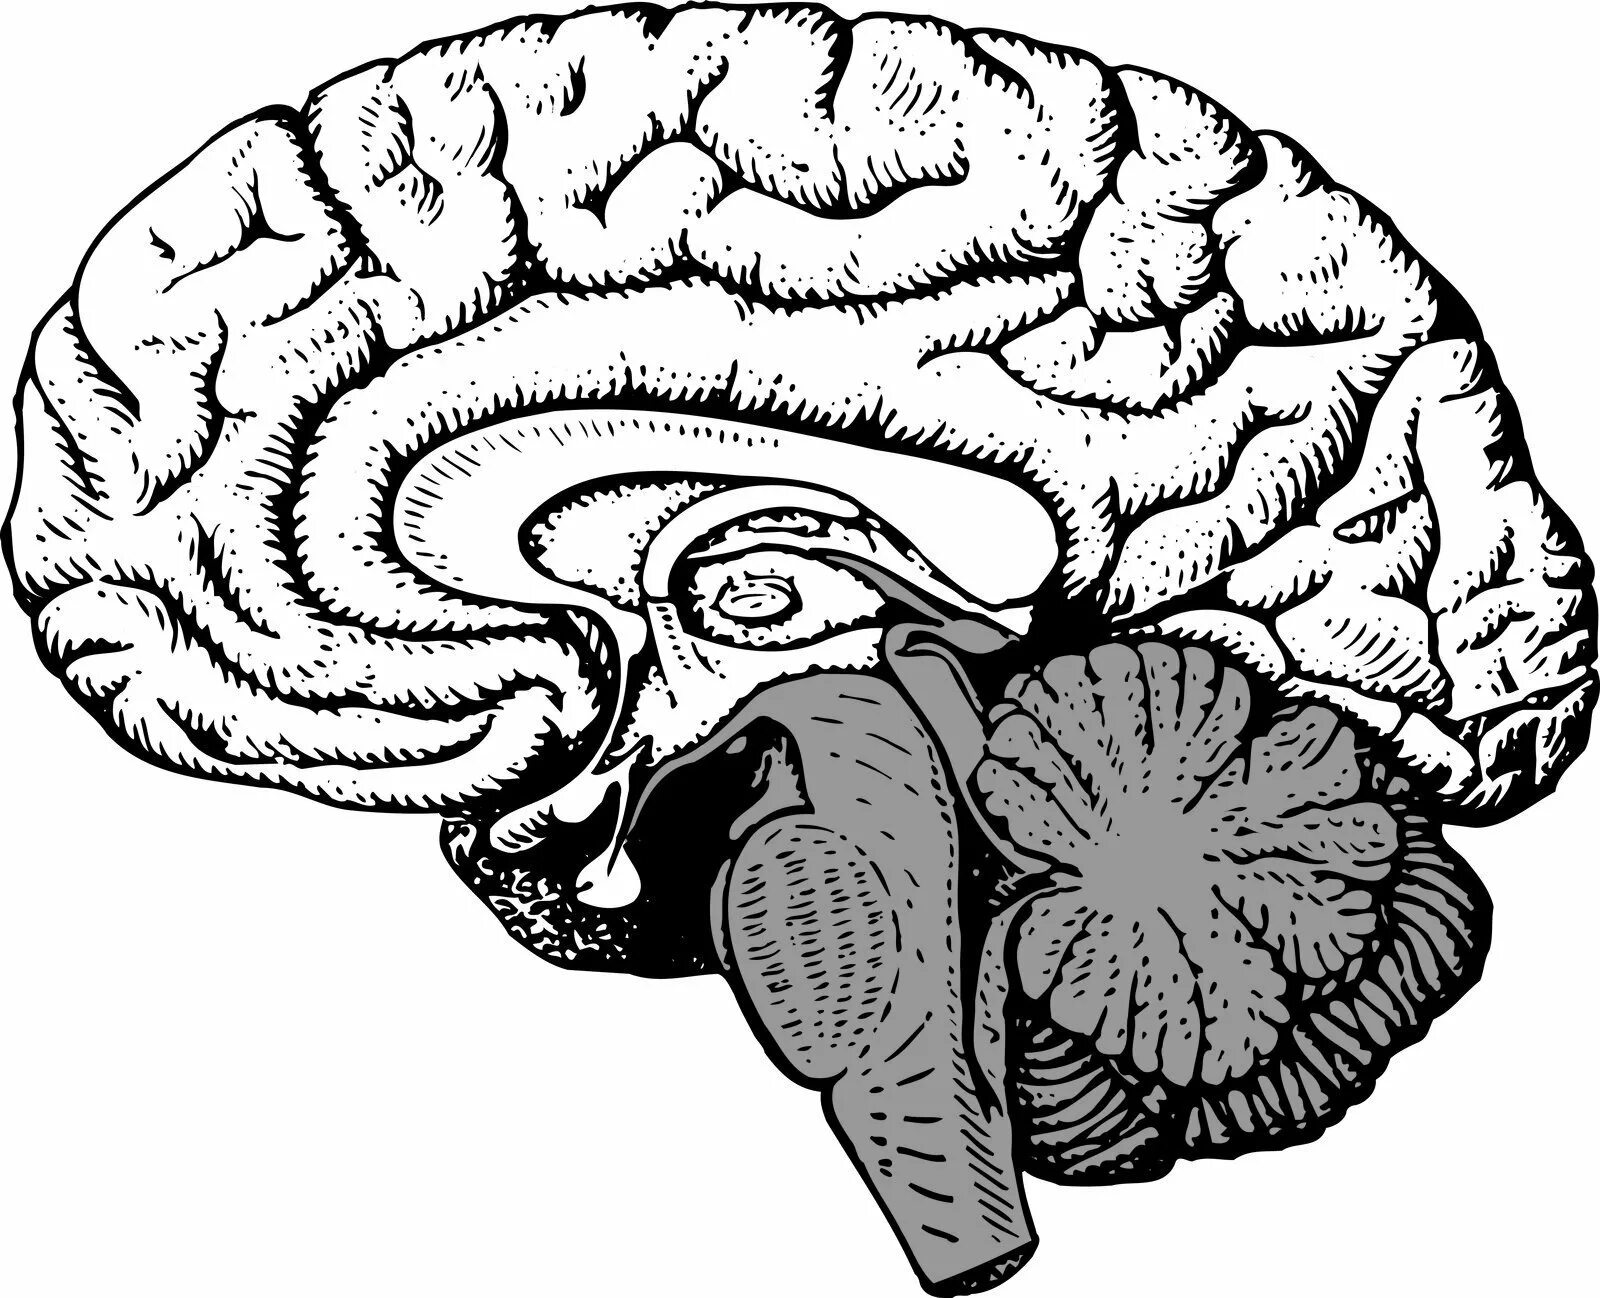 Сагиттальный разрез головного мозга человека. Сагиттальный разрез мозга анатомия. Сагиттальный разрез головного мозга человека рисунок. Сагиттальный срез головного мозга анатомия. Мозг без подписей